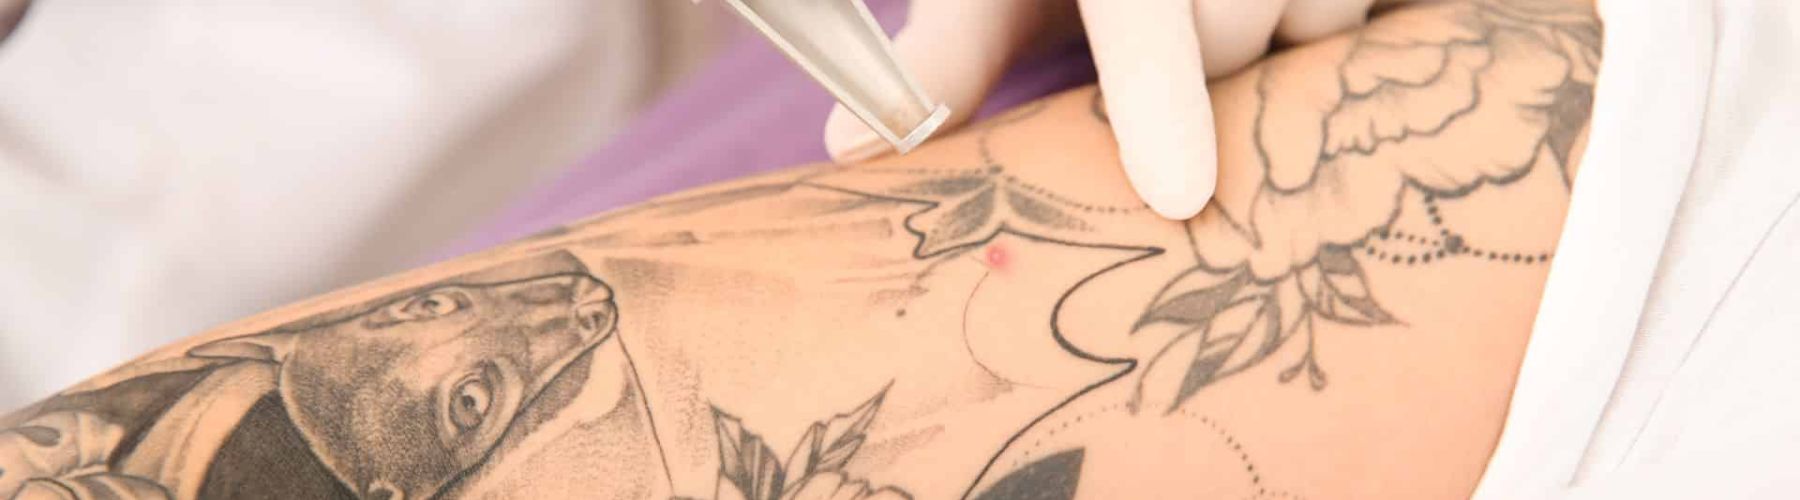 Tattoo verwijderen arm met laserbehandeling Laserstudio Noord